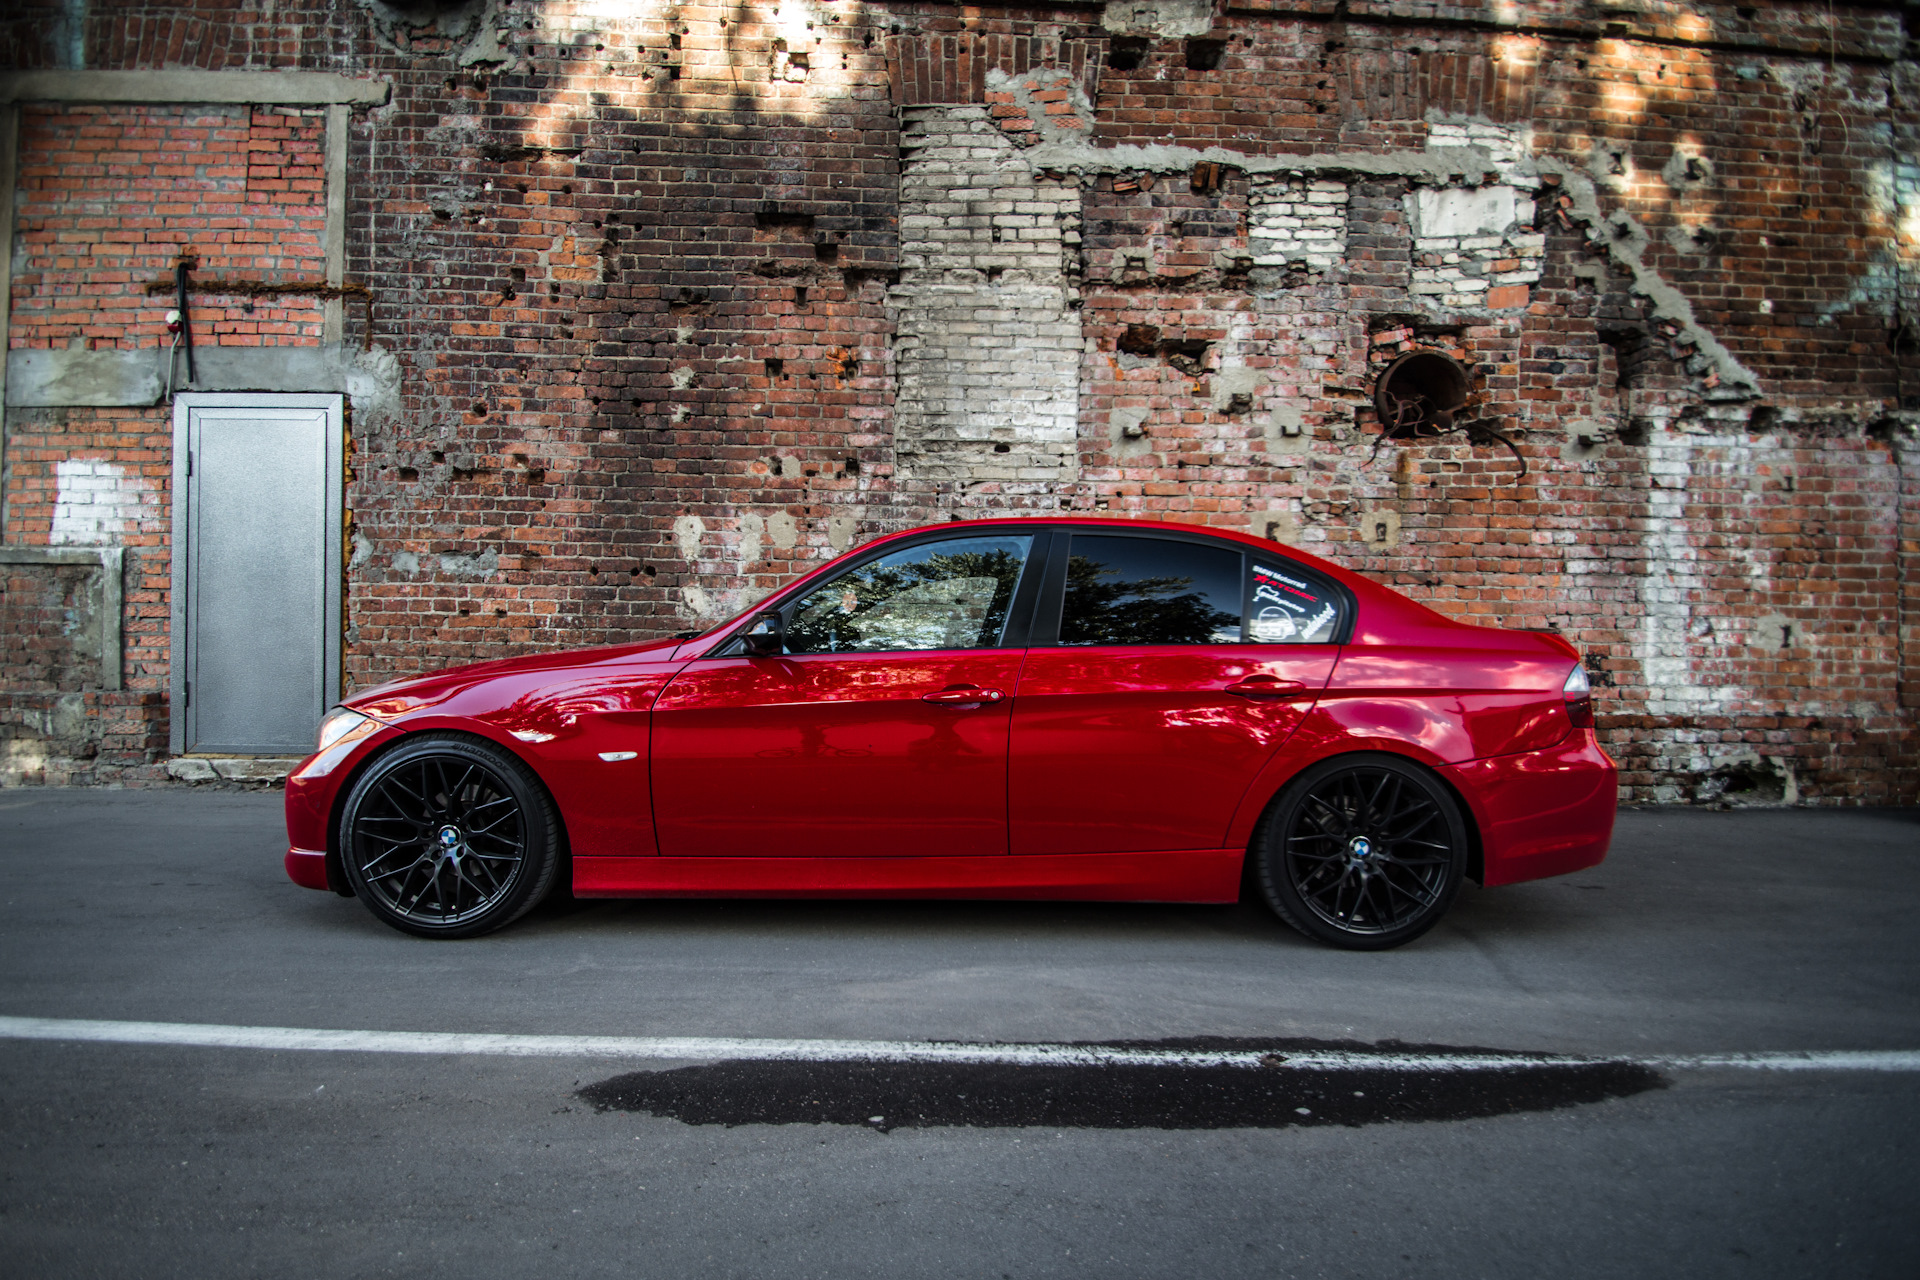 BMW e90 Red